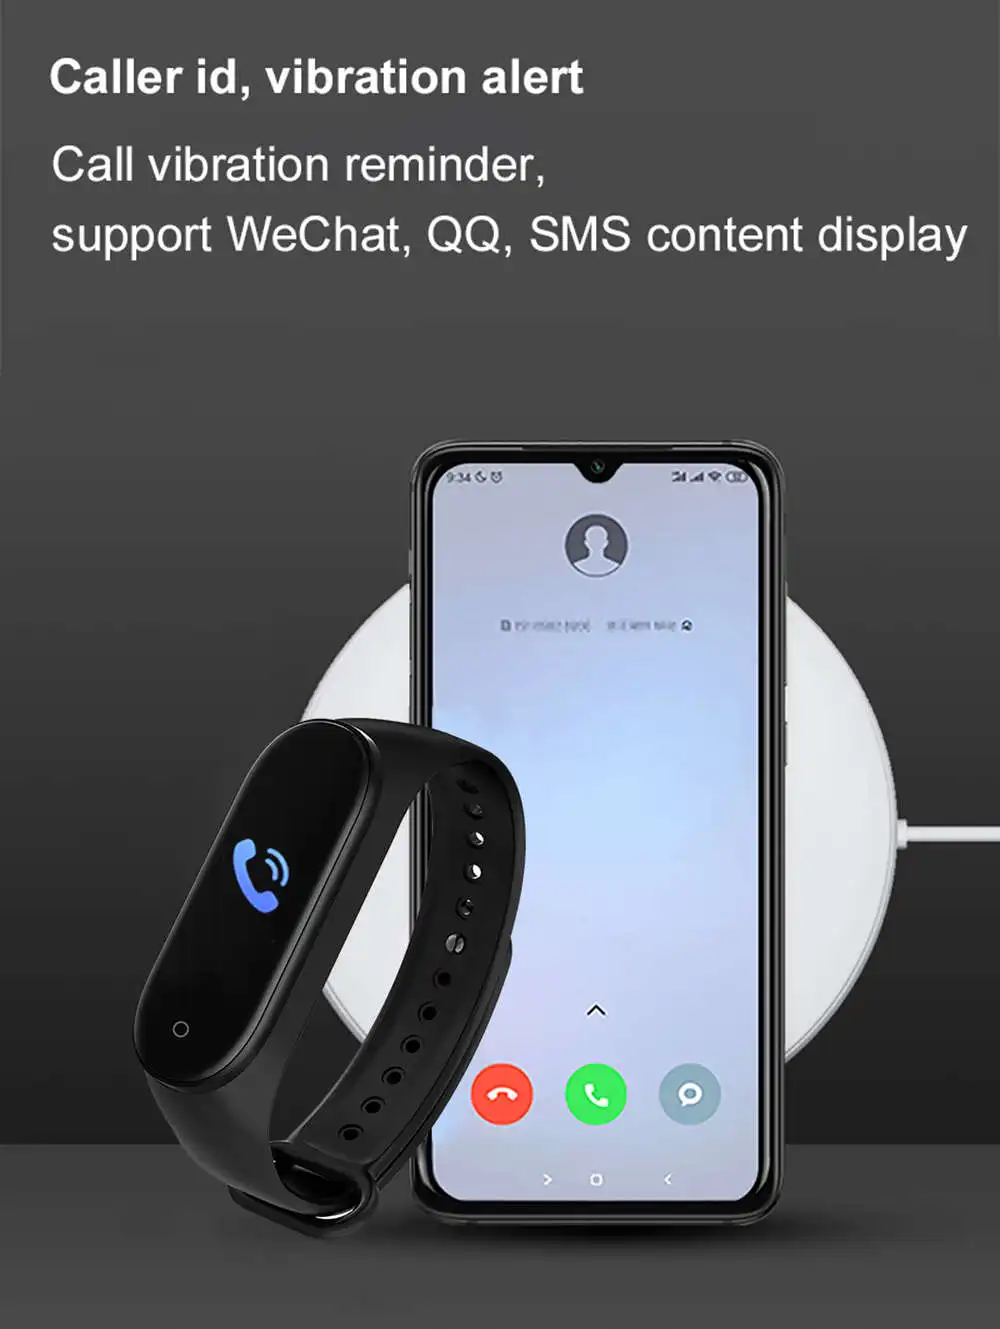 M4 Smart Watch Bracelet Full Touch TFT Screen Waterproof Heart Rate Monitor Fitness Tracker Smartwatch M4